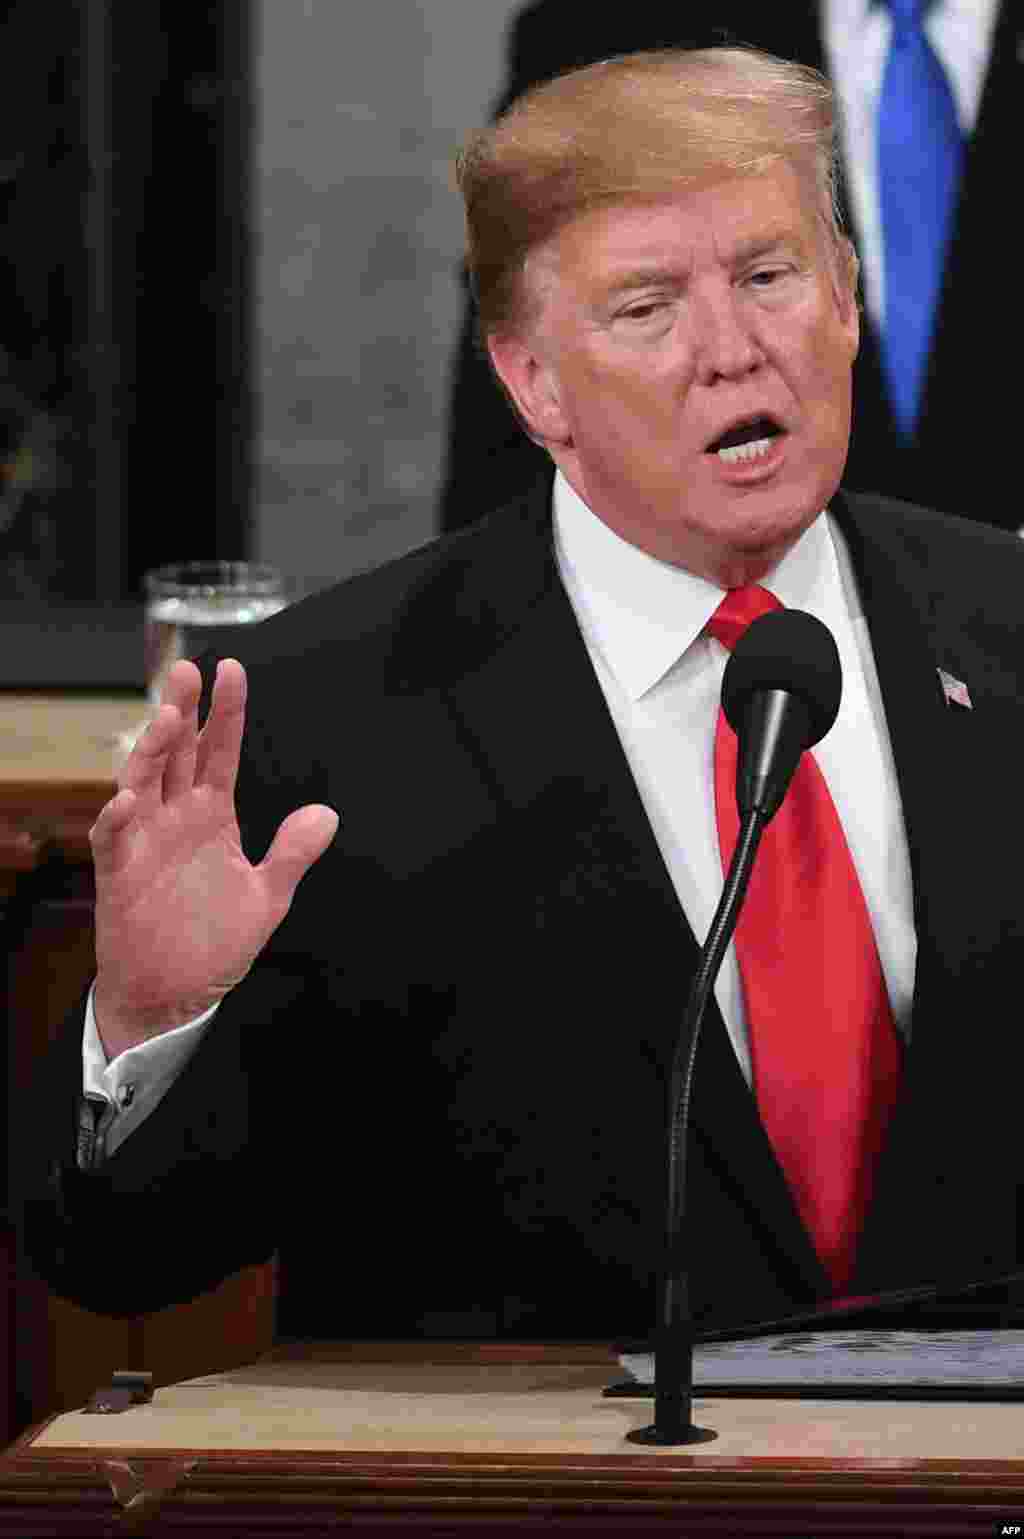 El presidente de los Estados Unidos, Donald Trump, pronuncia el discurso del Estado de la Unión en el Capitolio de los Estados Unidos en Washington, DC